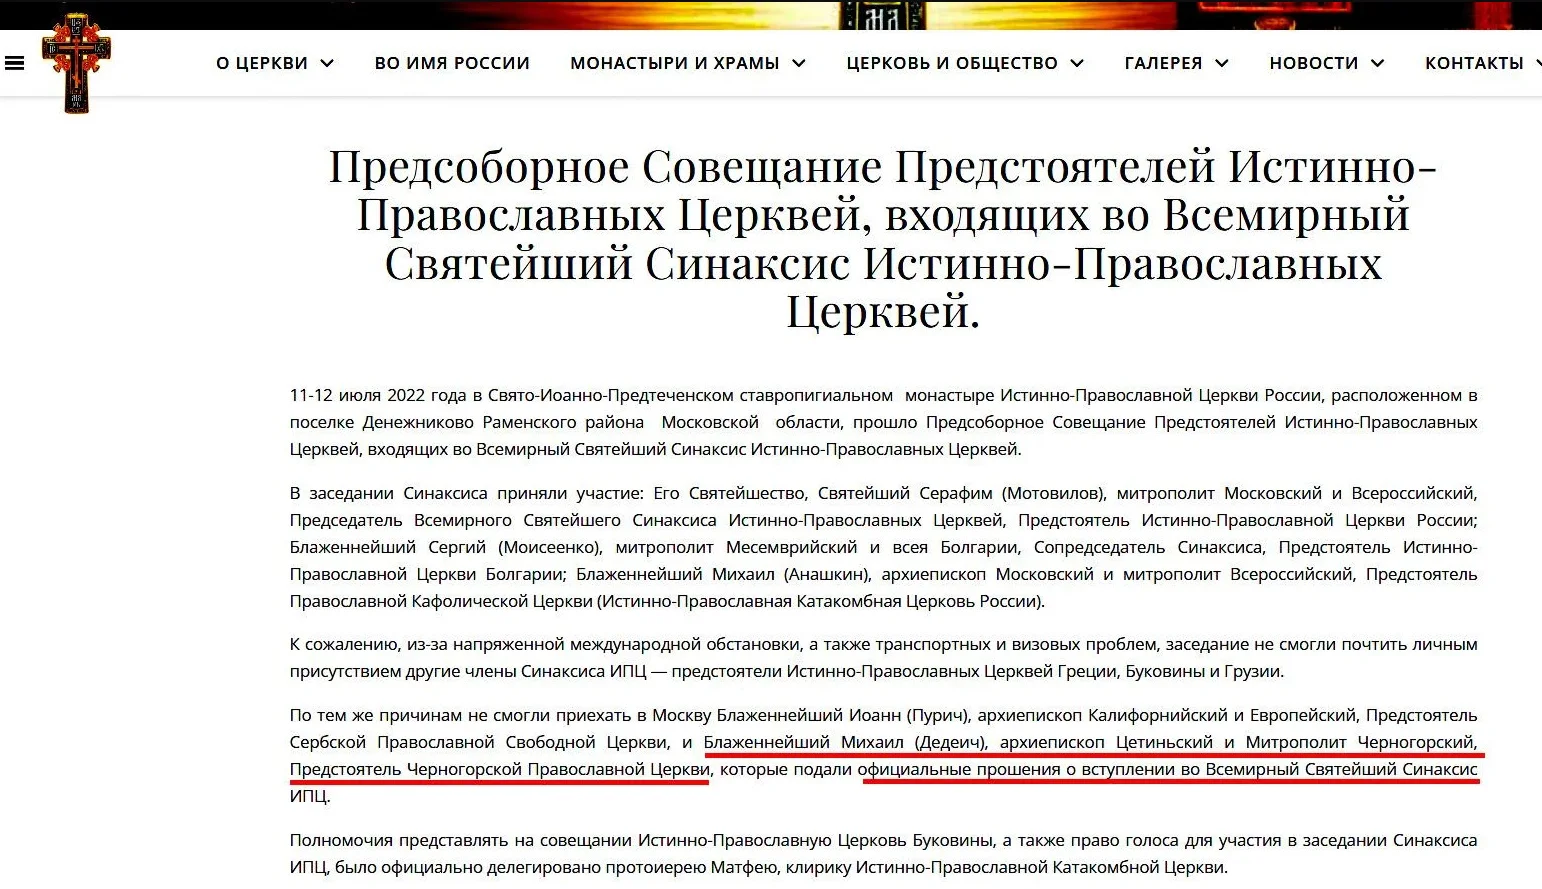 Nezavisimaya Gazeta: Mihaila uklonili zbog veze s Rusijom